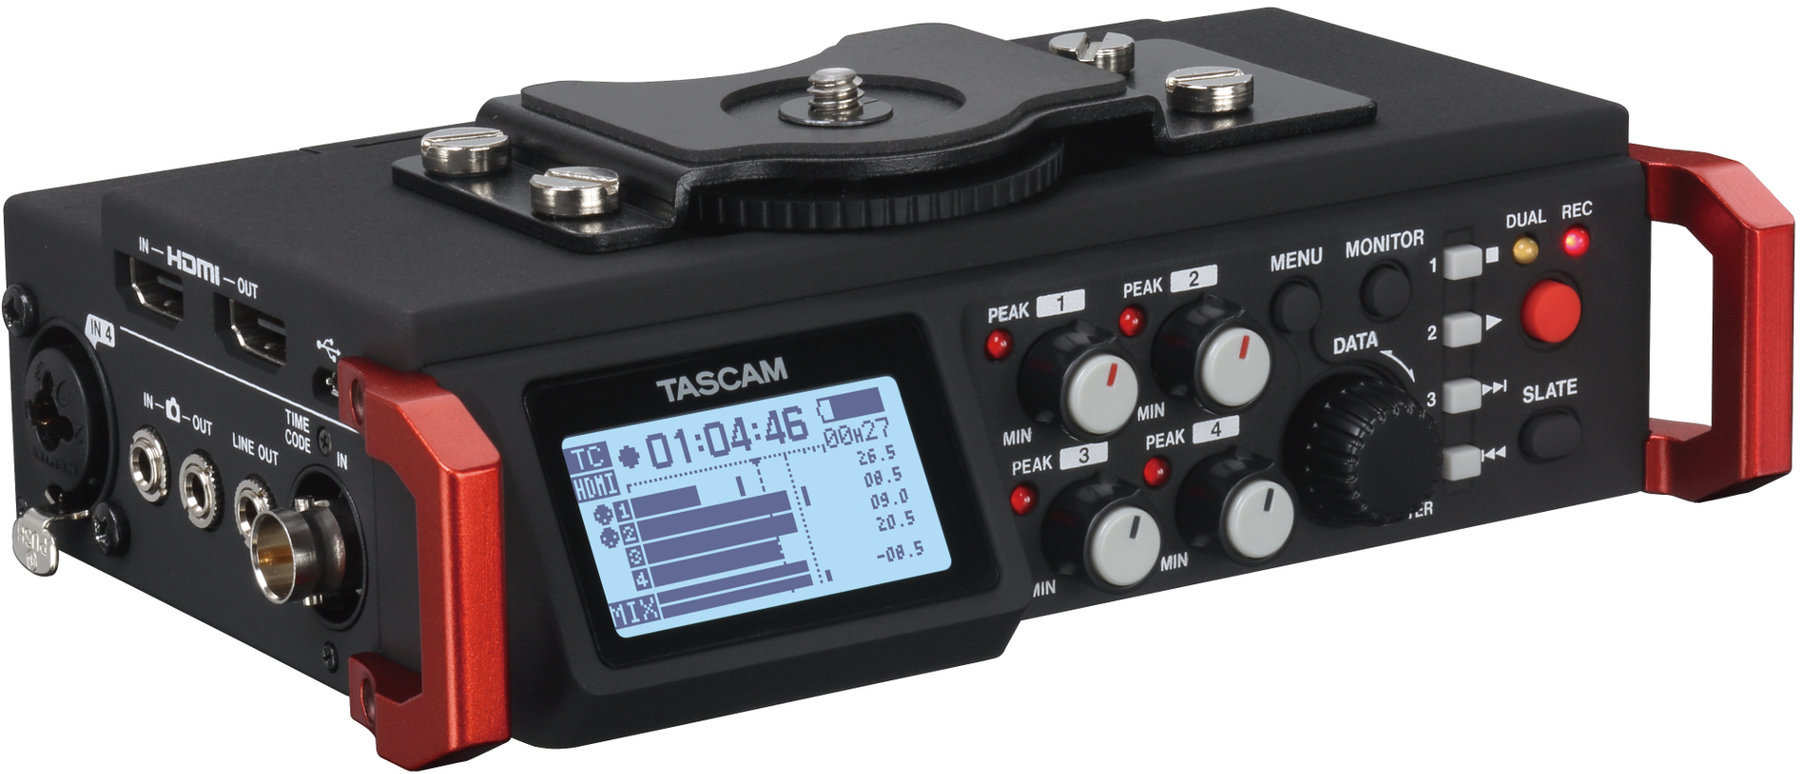 Portable Digital Recorder Tascam DR-701D Black